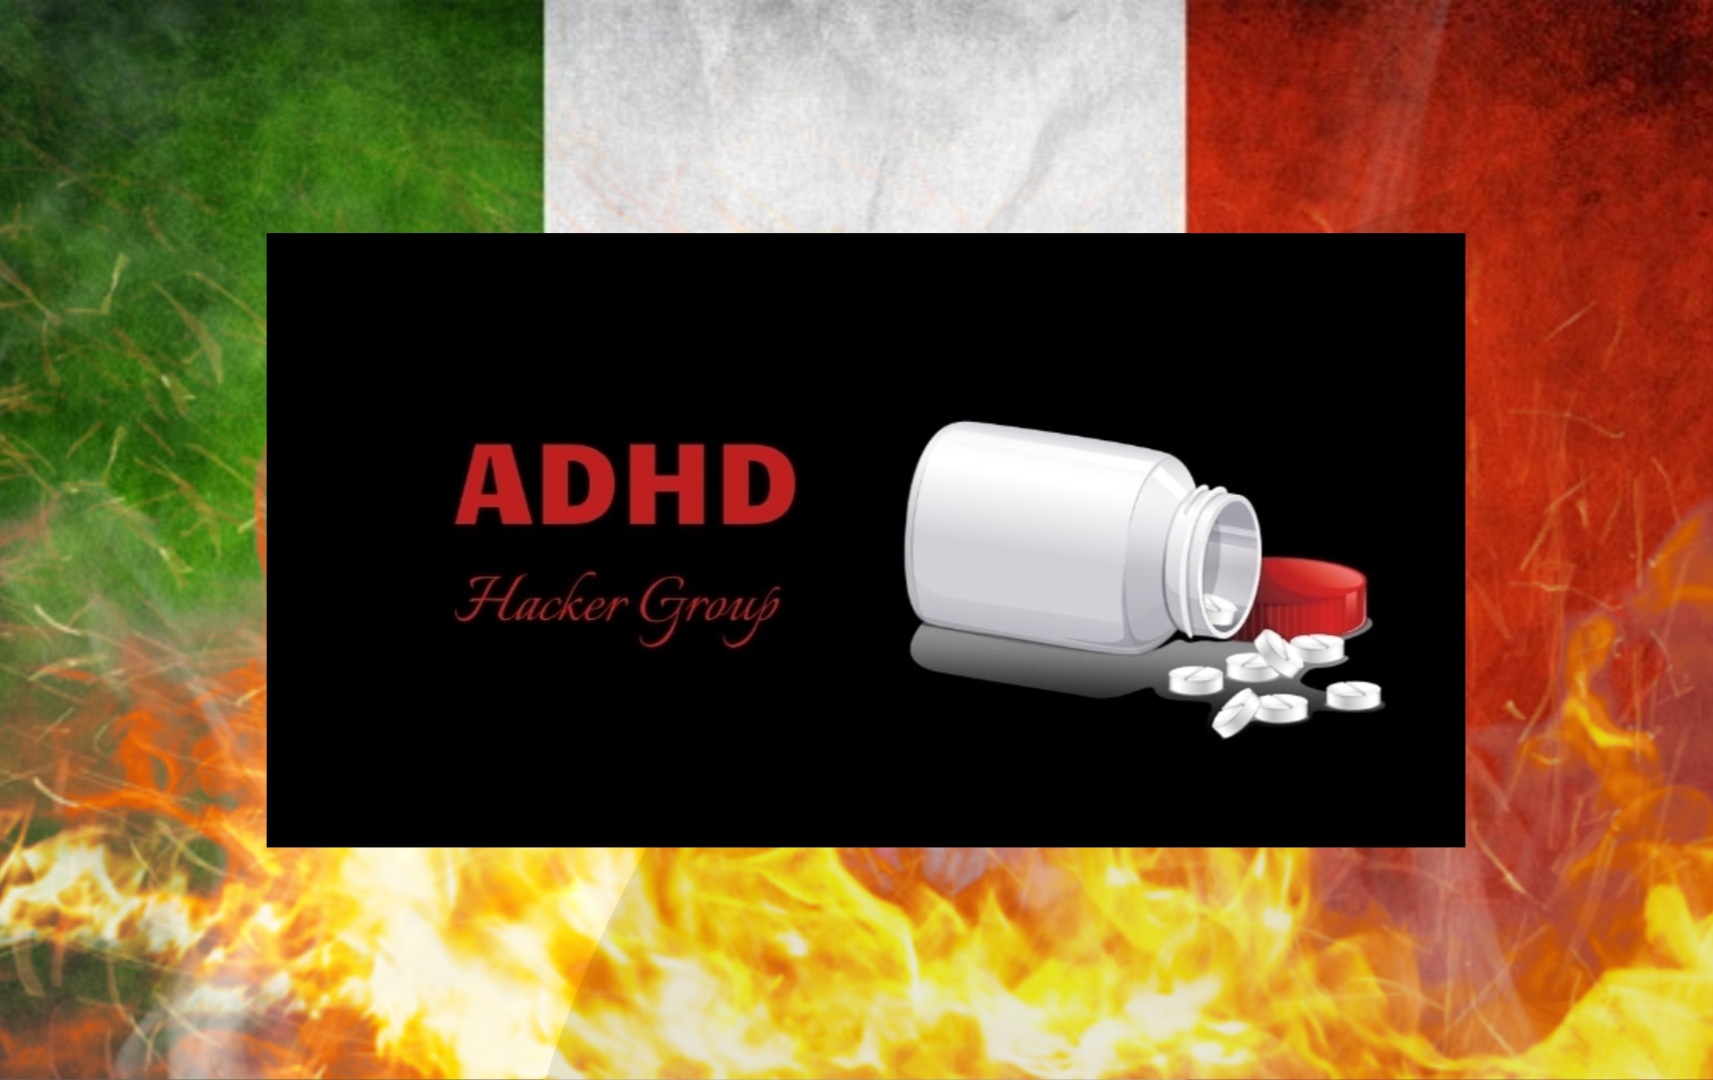 La cyber gang italiana ADHD hacking group entra in scena e colpisce 4 siti legali